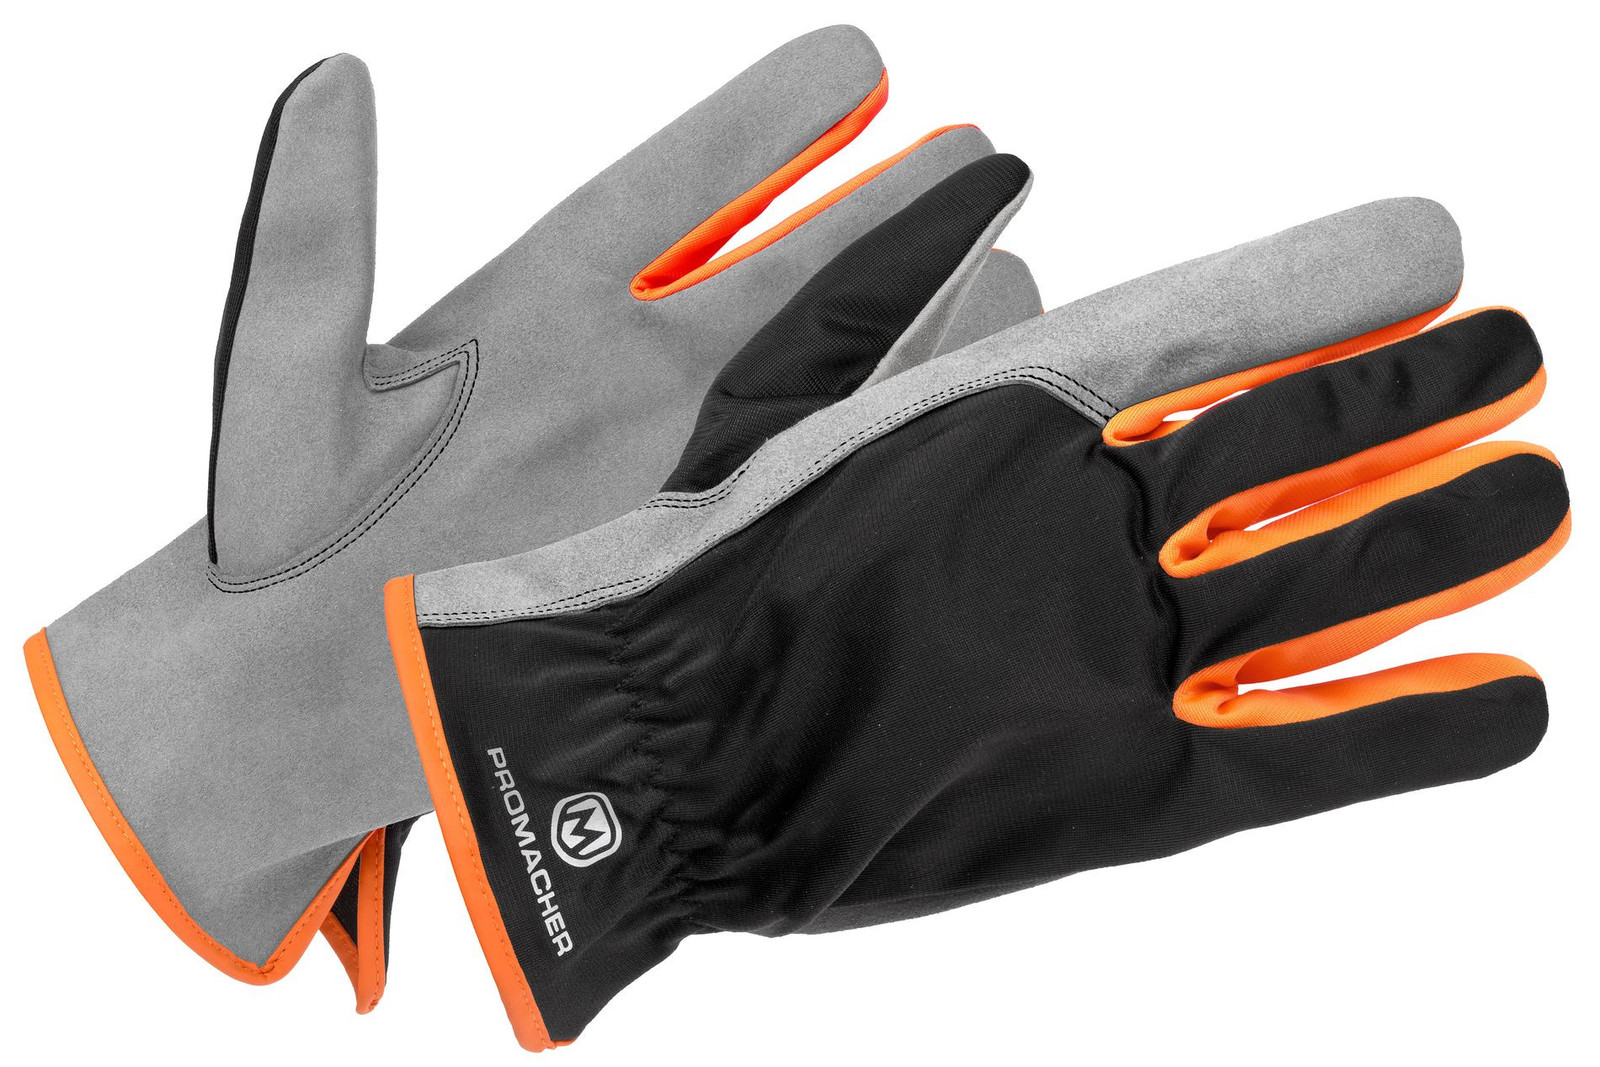 Pracovné rukavice Promacher Carpos kombinované - veľkosť: 9/L, farba: svetlo sivá/ oranžová